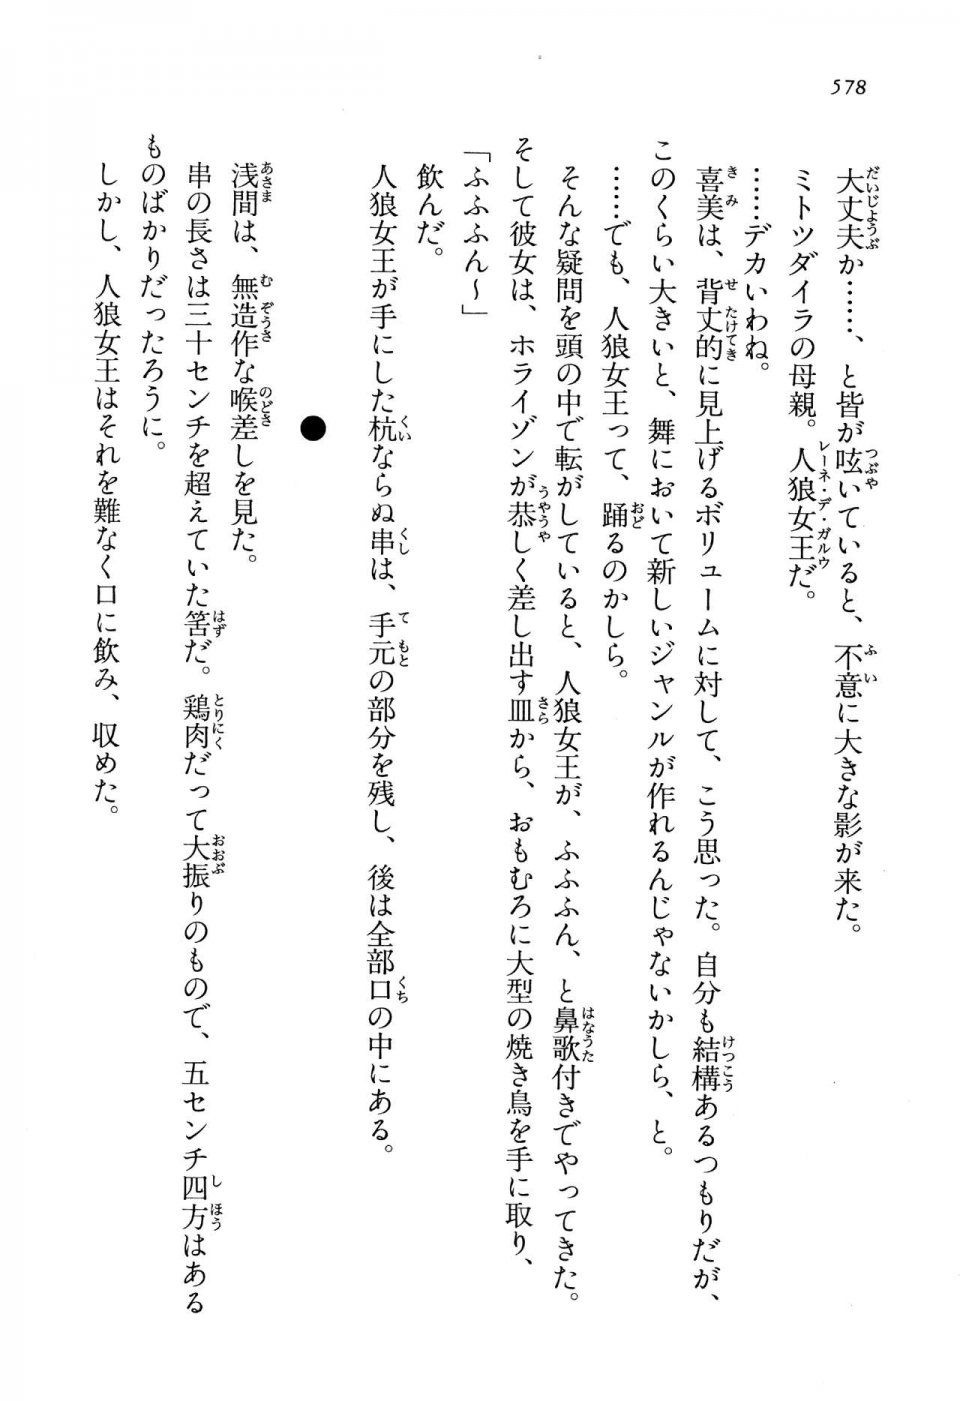 Kyoukai Senjou no Horizon LN Vol 13(6A) - Photo #578